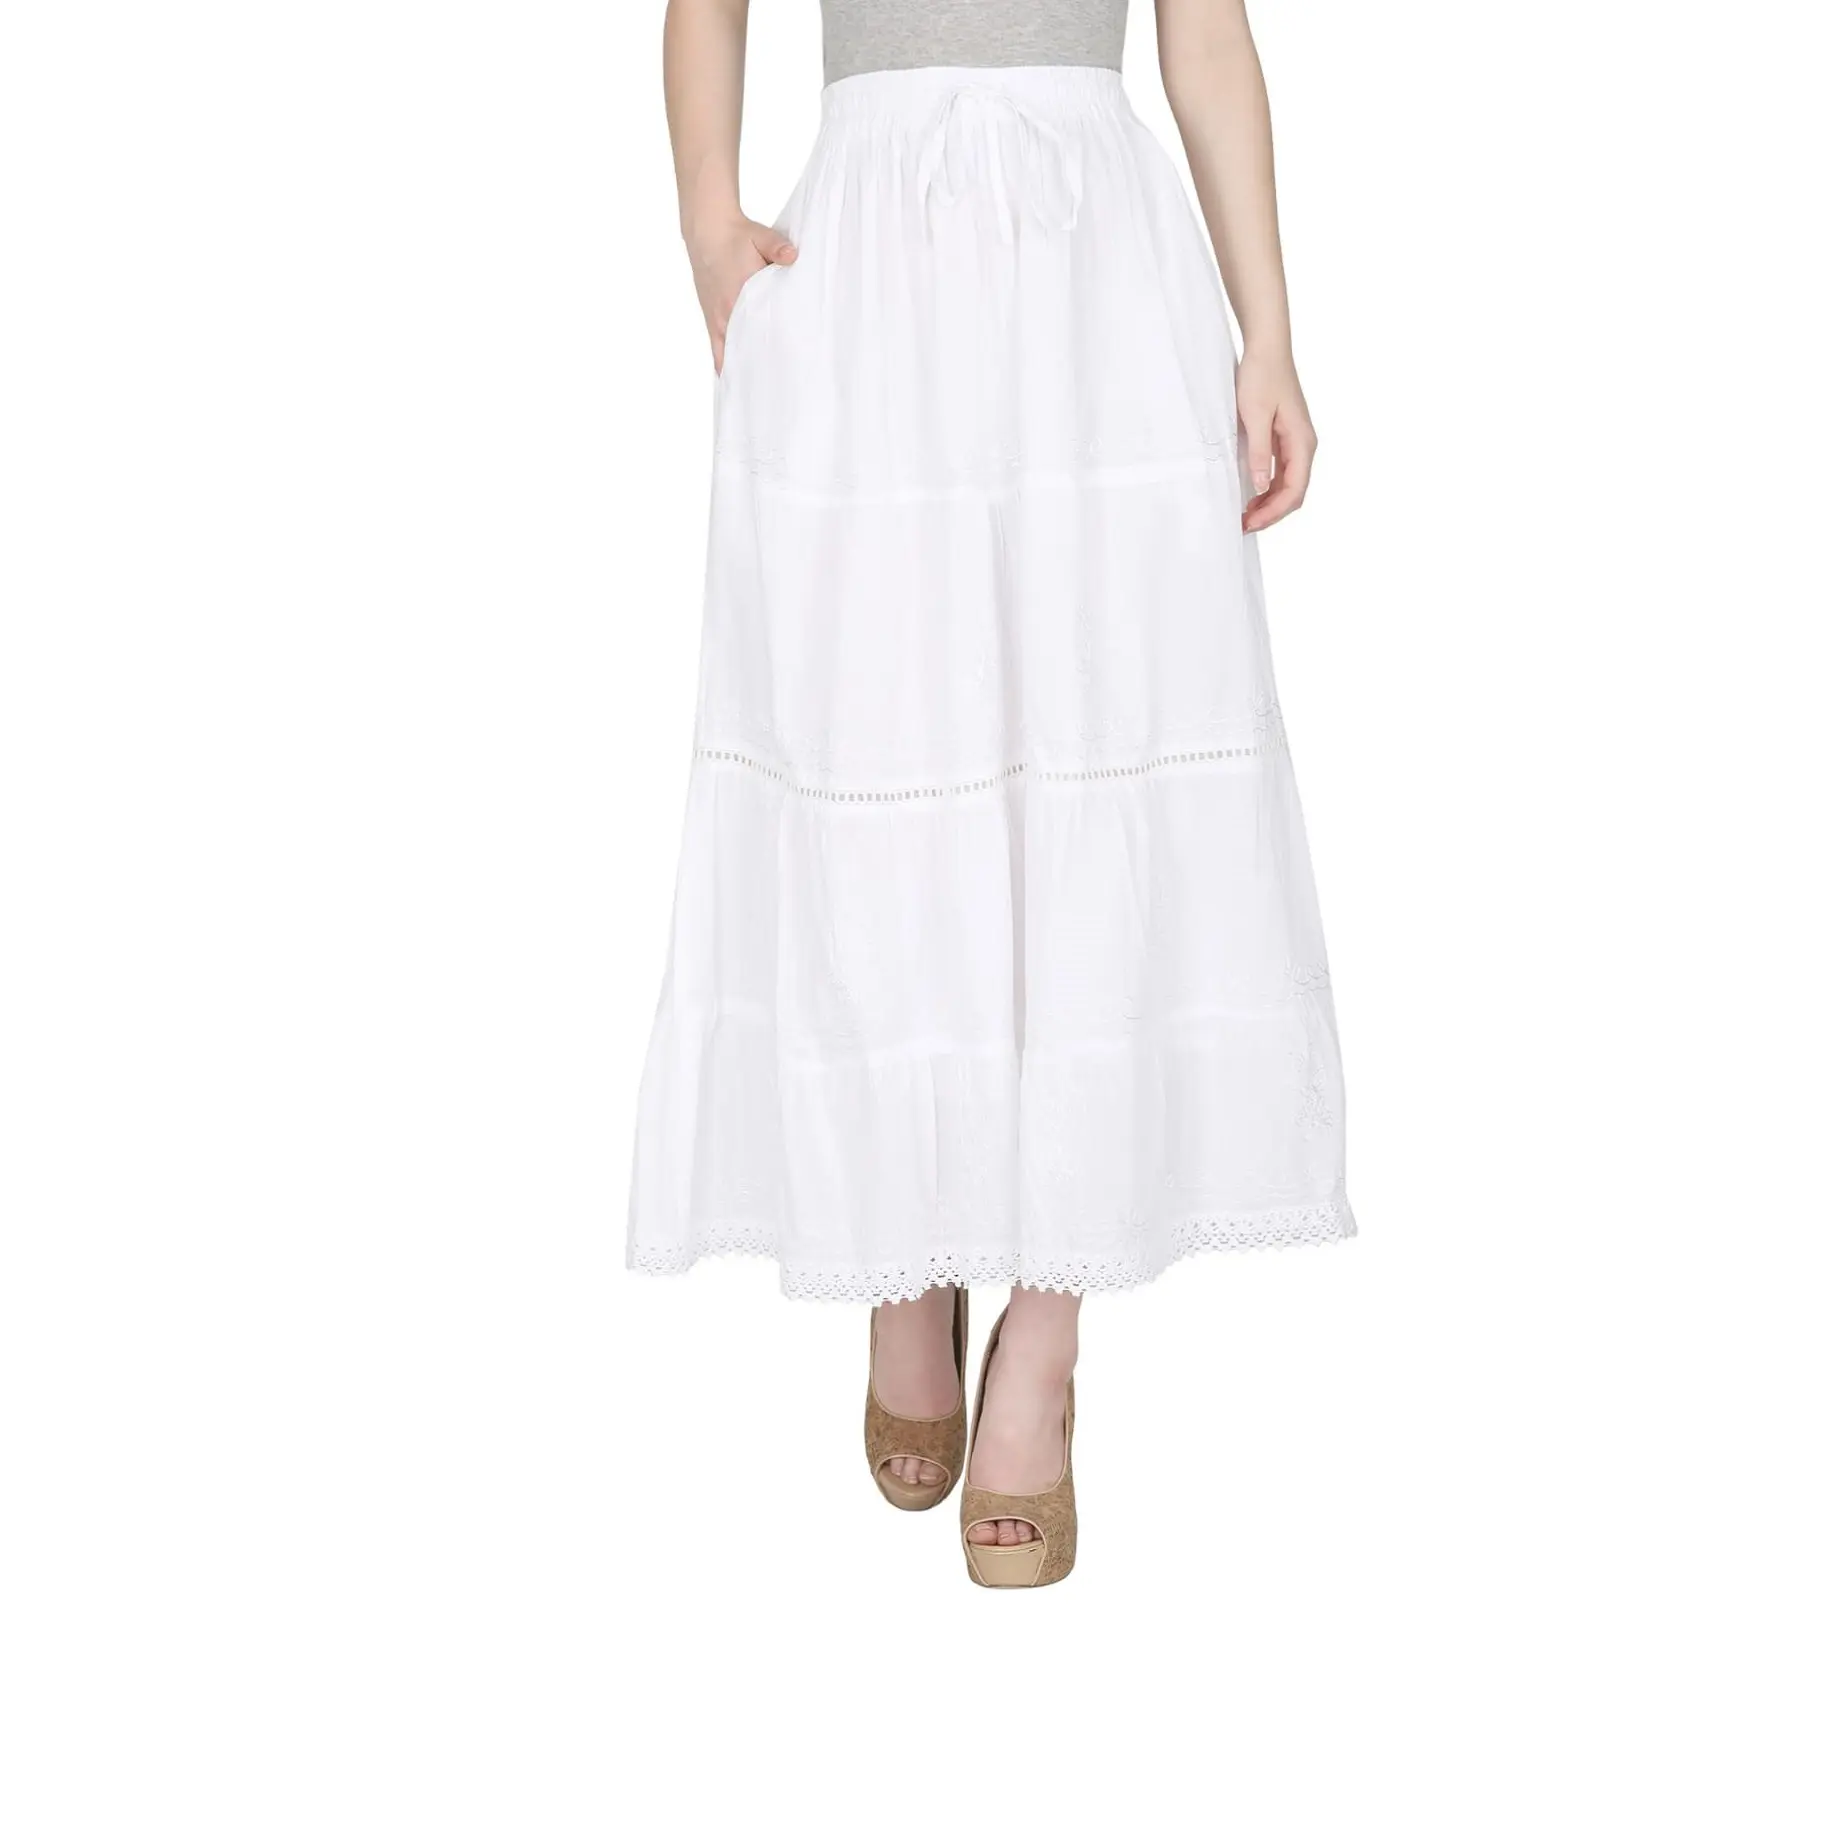 Модная белая Цыганская юбка из 100% хлопка, женская одежда, привлекательная длинная юбка/повседневная юбка по оптовой цене